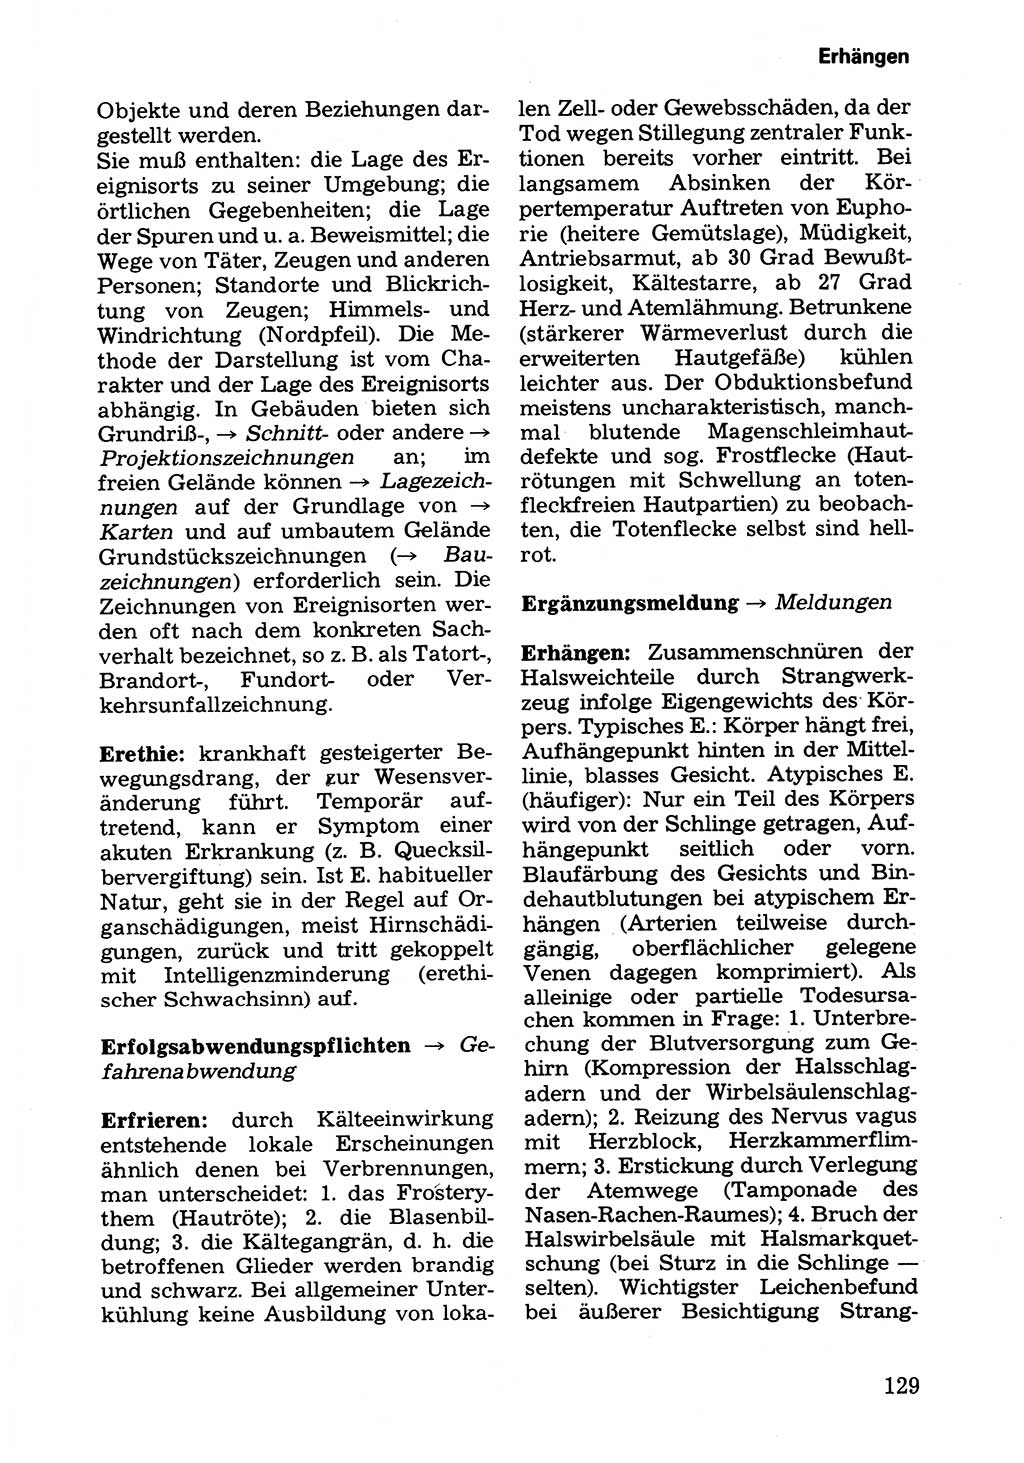 Wörterbuch der sozialistischen Kriminalistik [Deutsche Demokratische Republik (DDR)] 1981, Seite 129 (Wb. soz. Krim. DDR 1981, S. 129)